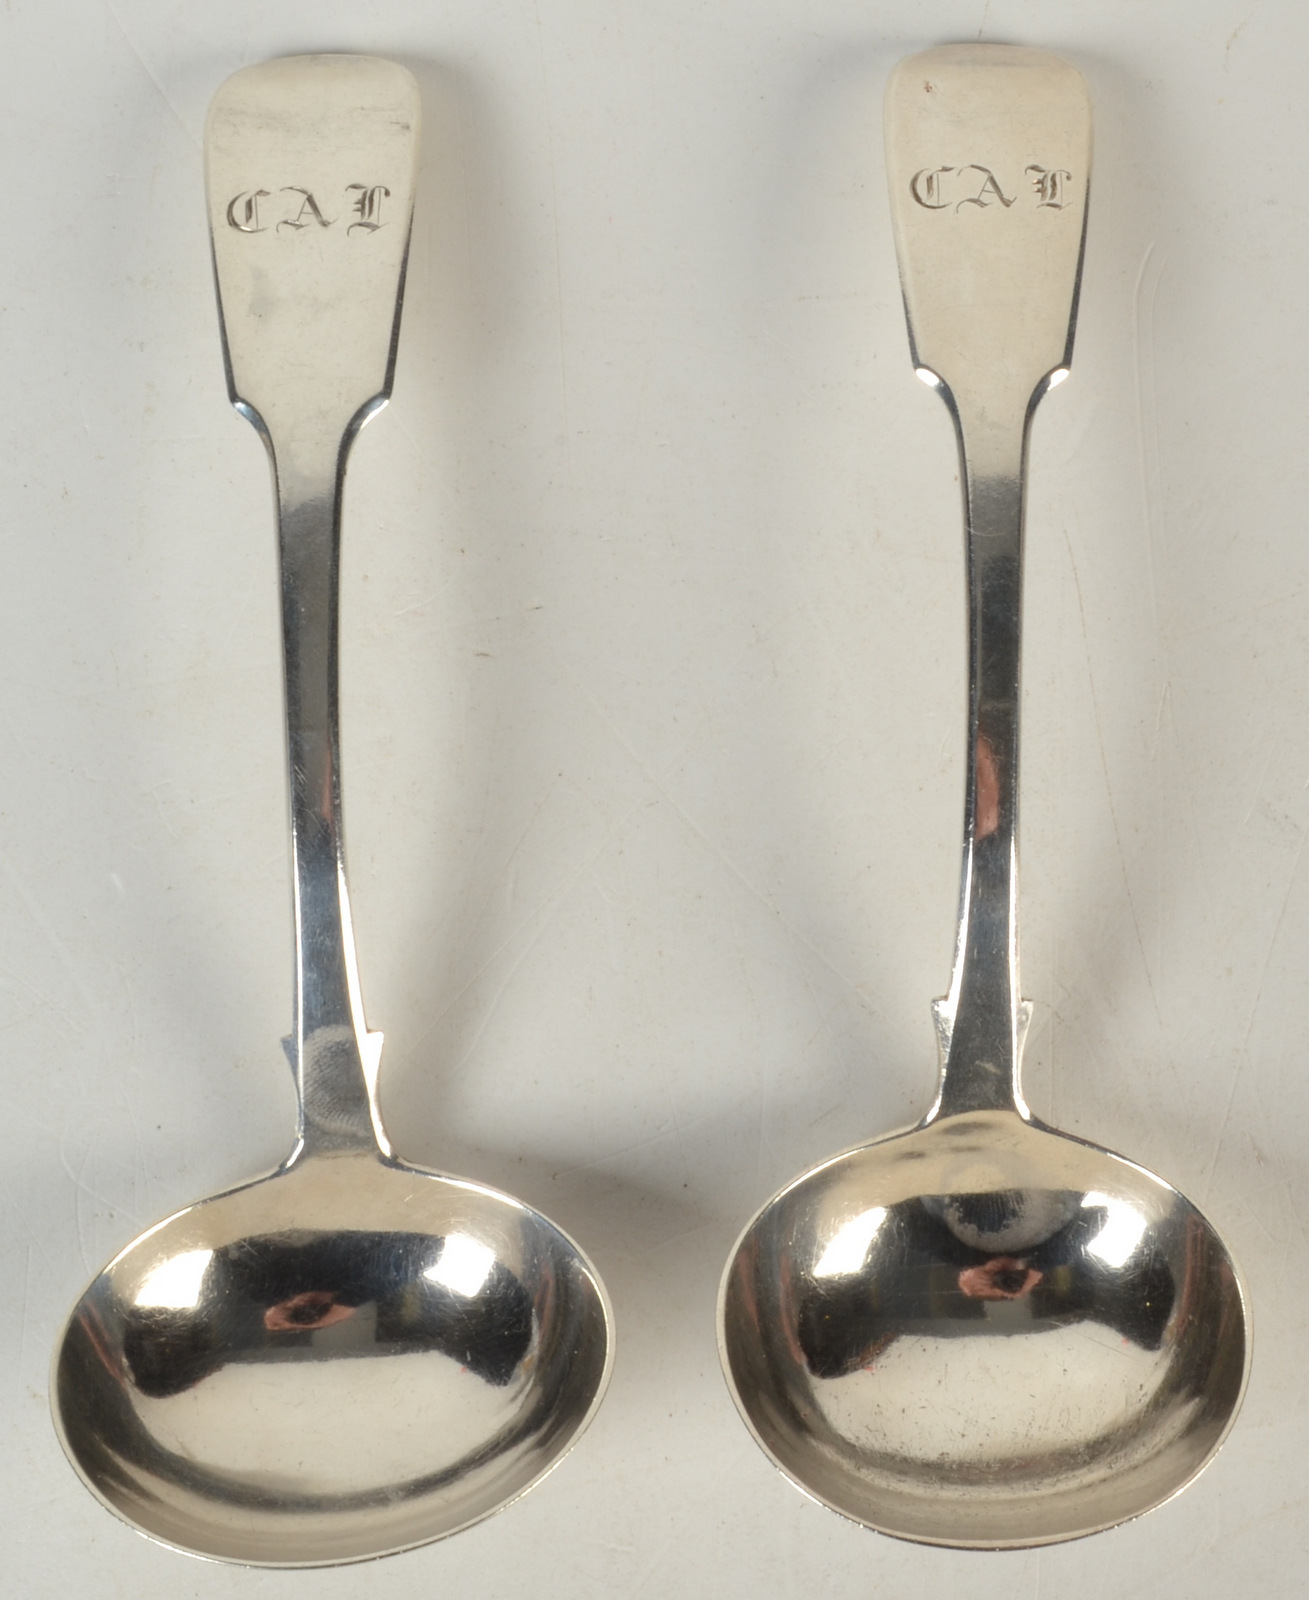 A pair of George IV plain fiddle pattern sauce ladles, 5oz.